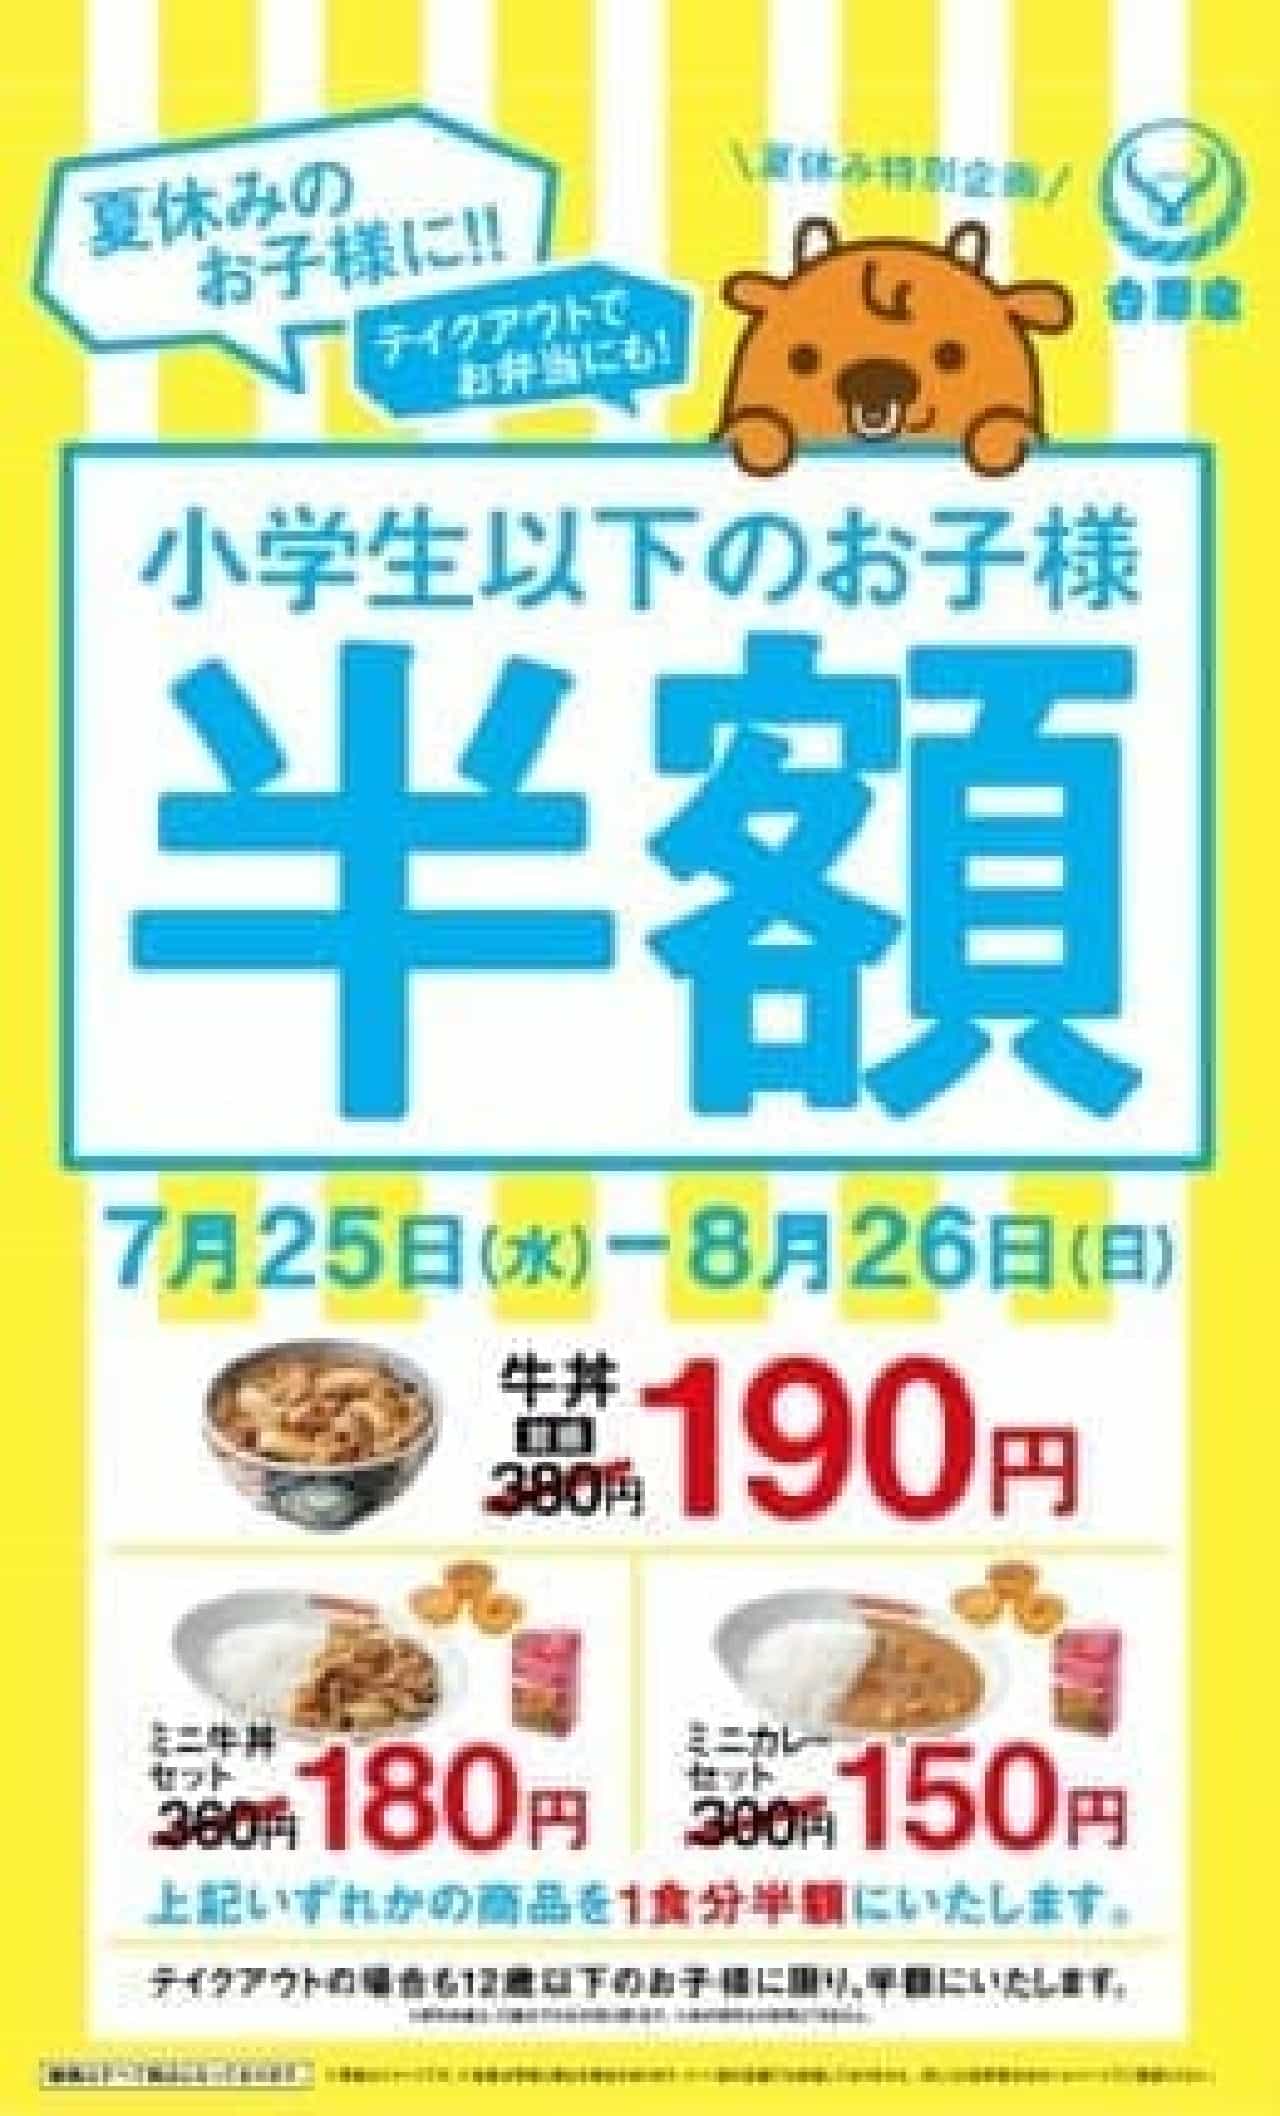 Yoshinoya "Children's Half Price Campaign"